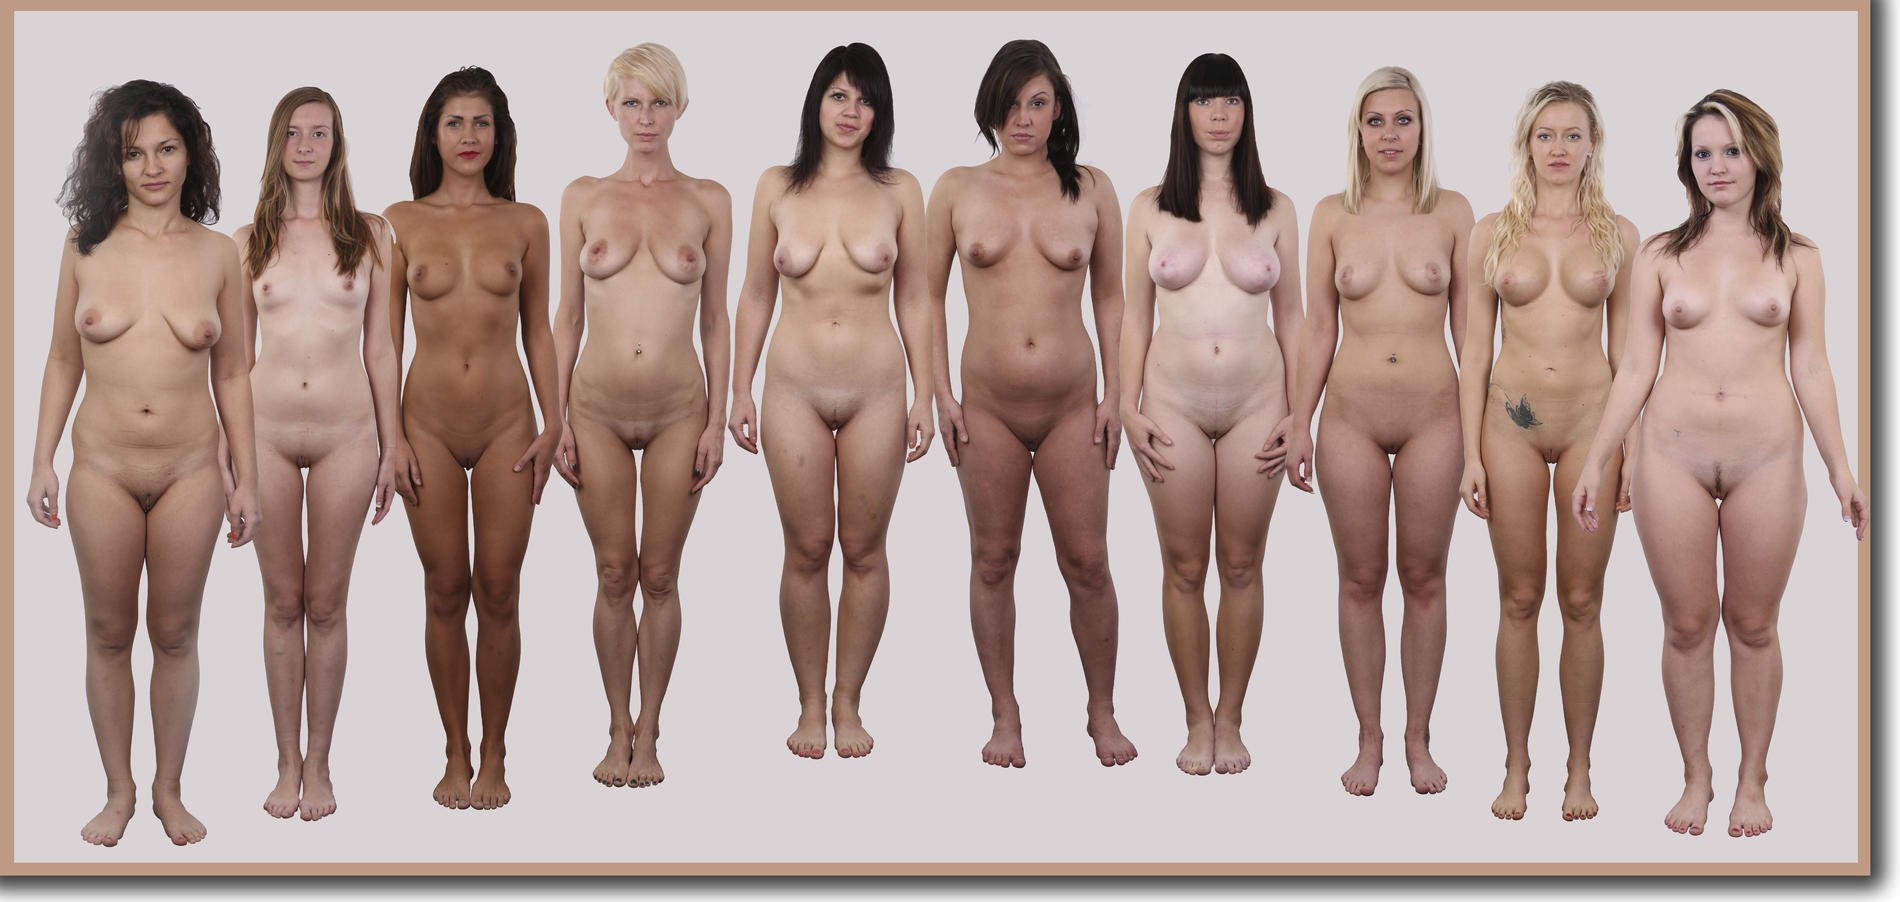 Смотрите на обнаженные тела девушек азиаток разных форм и возрастов